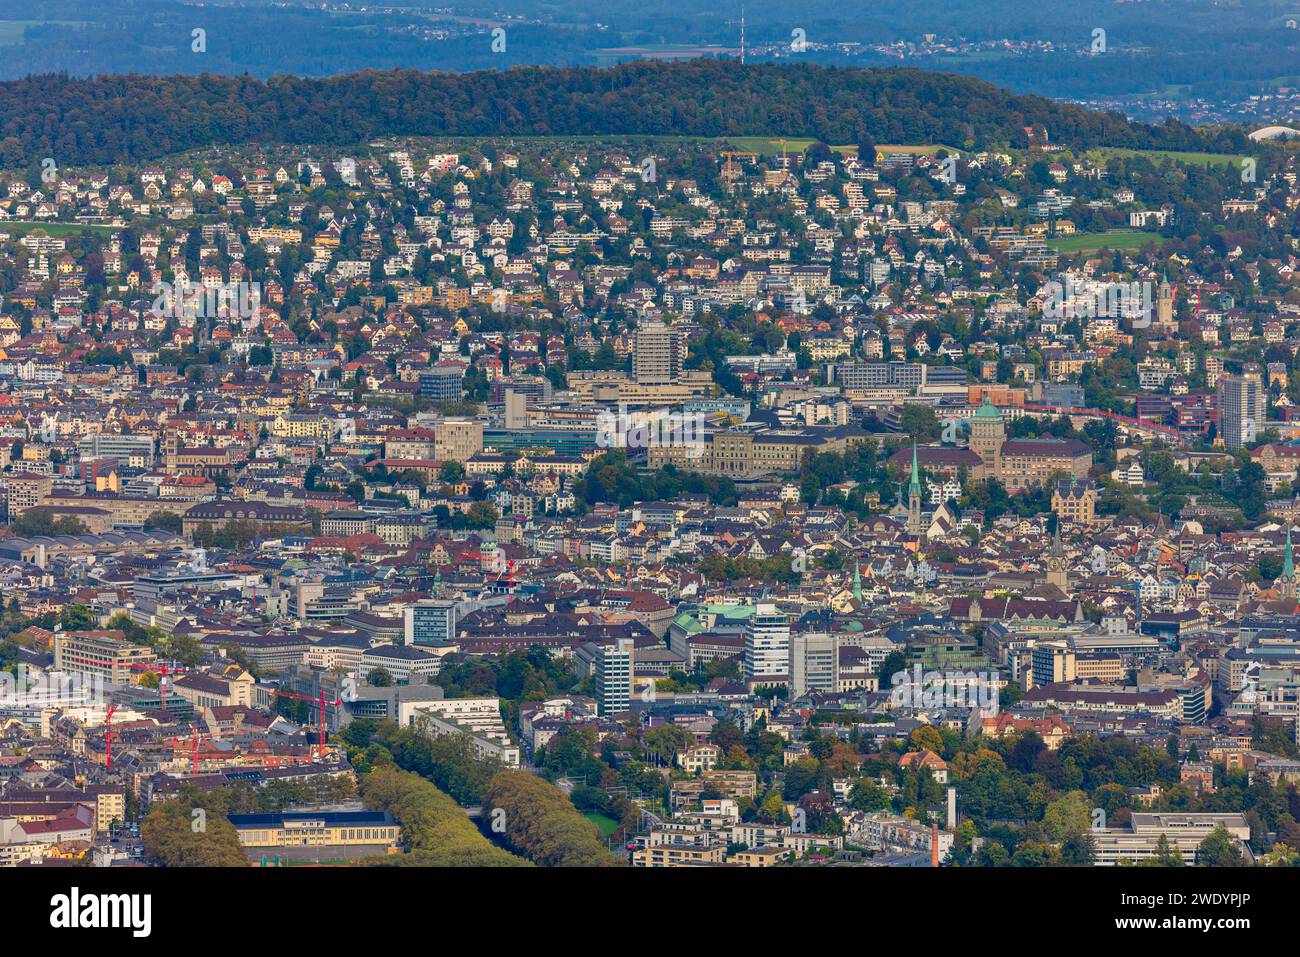 Aerial view of the city of Zurich in Zurich, Switzerland. Stock Photo